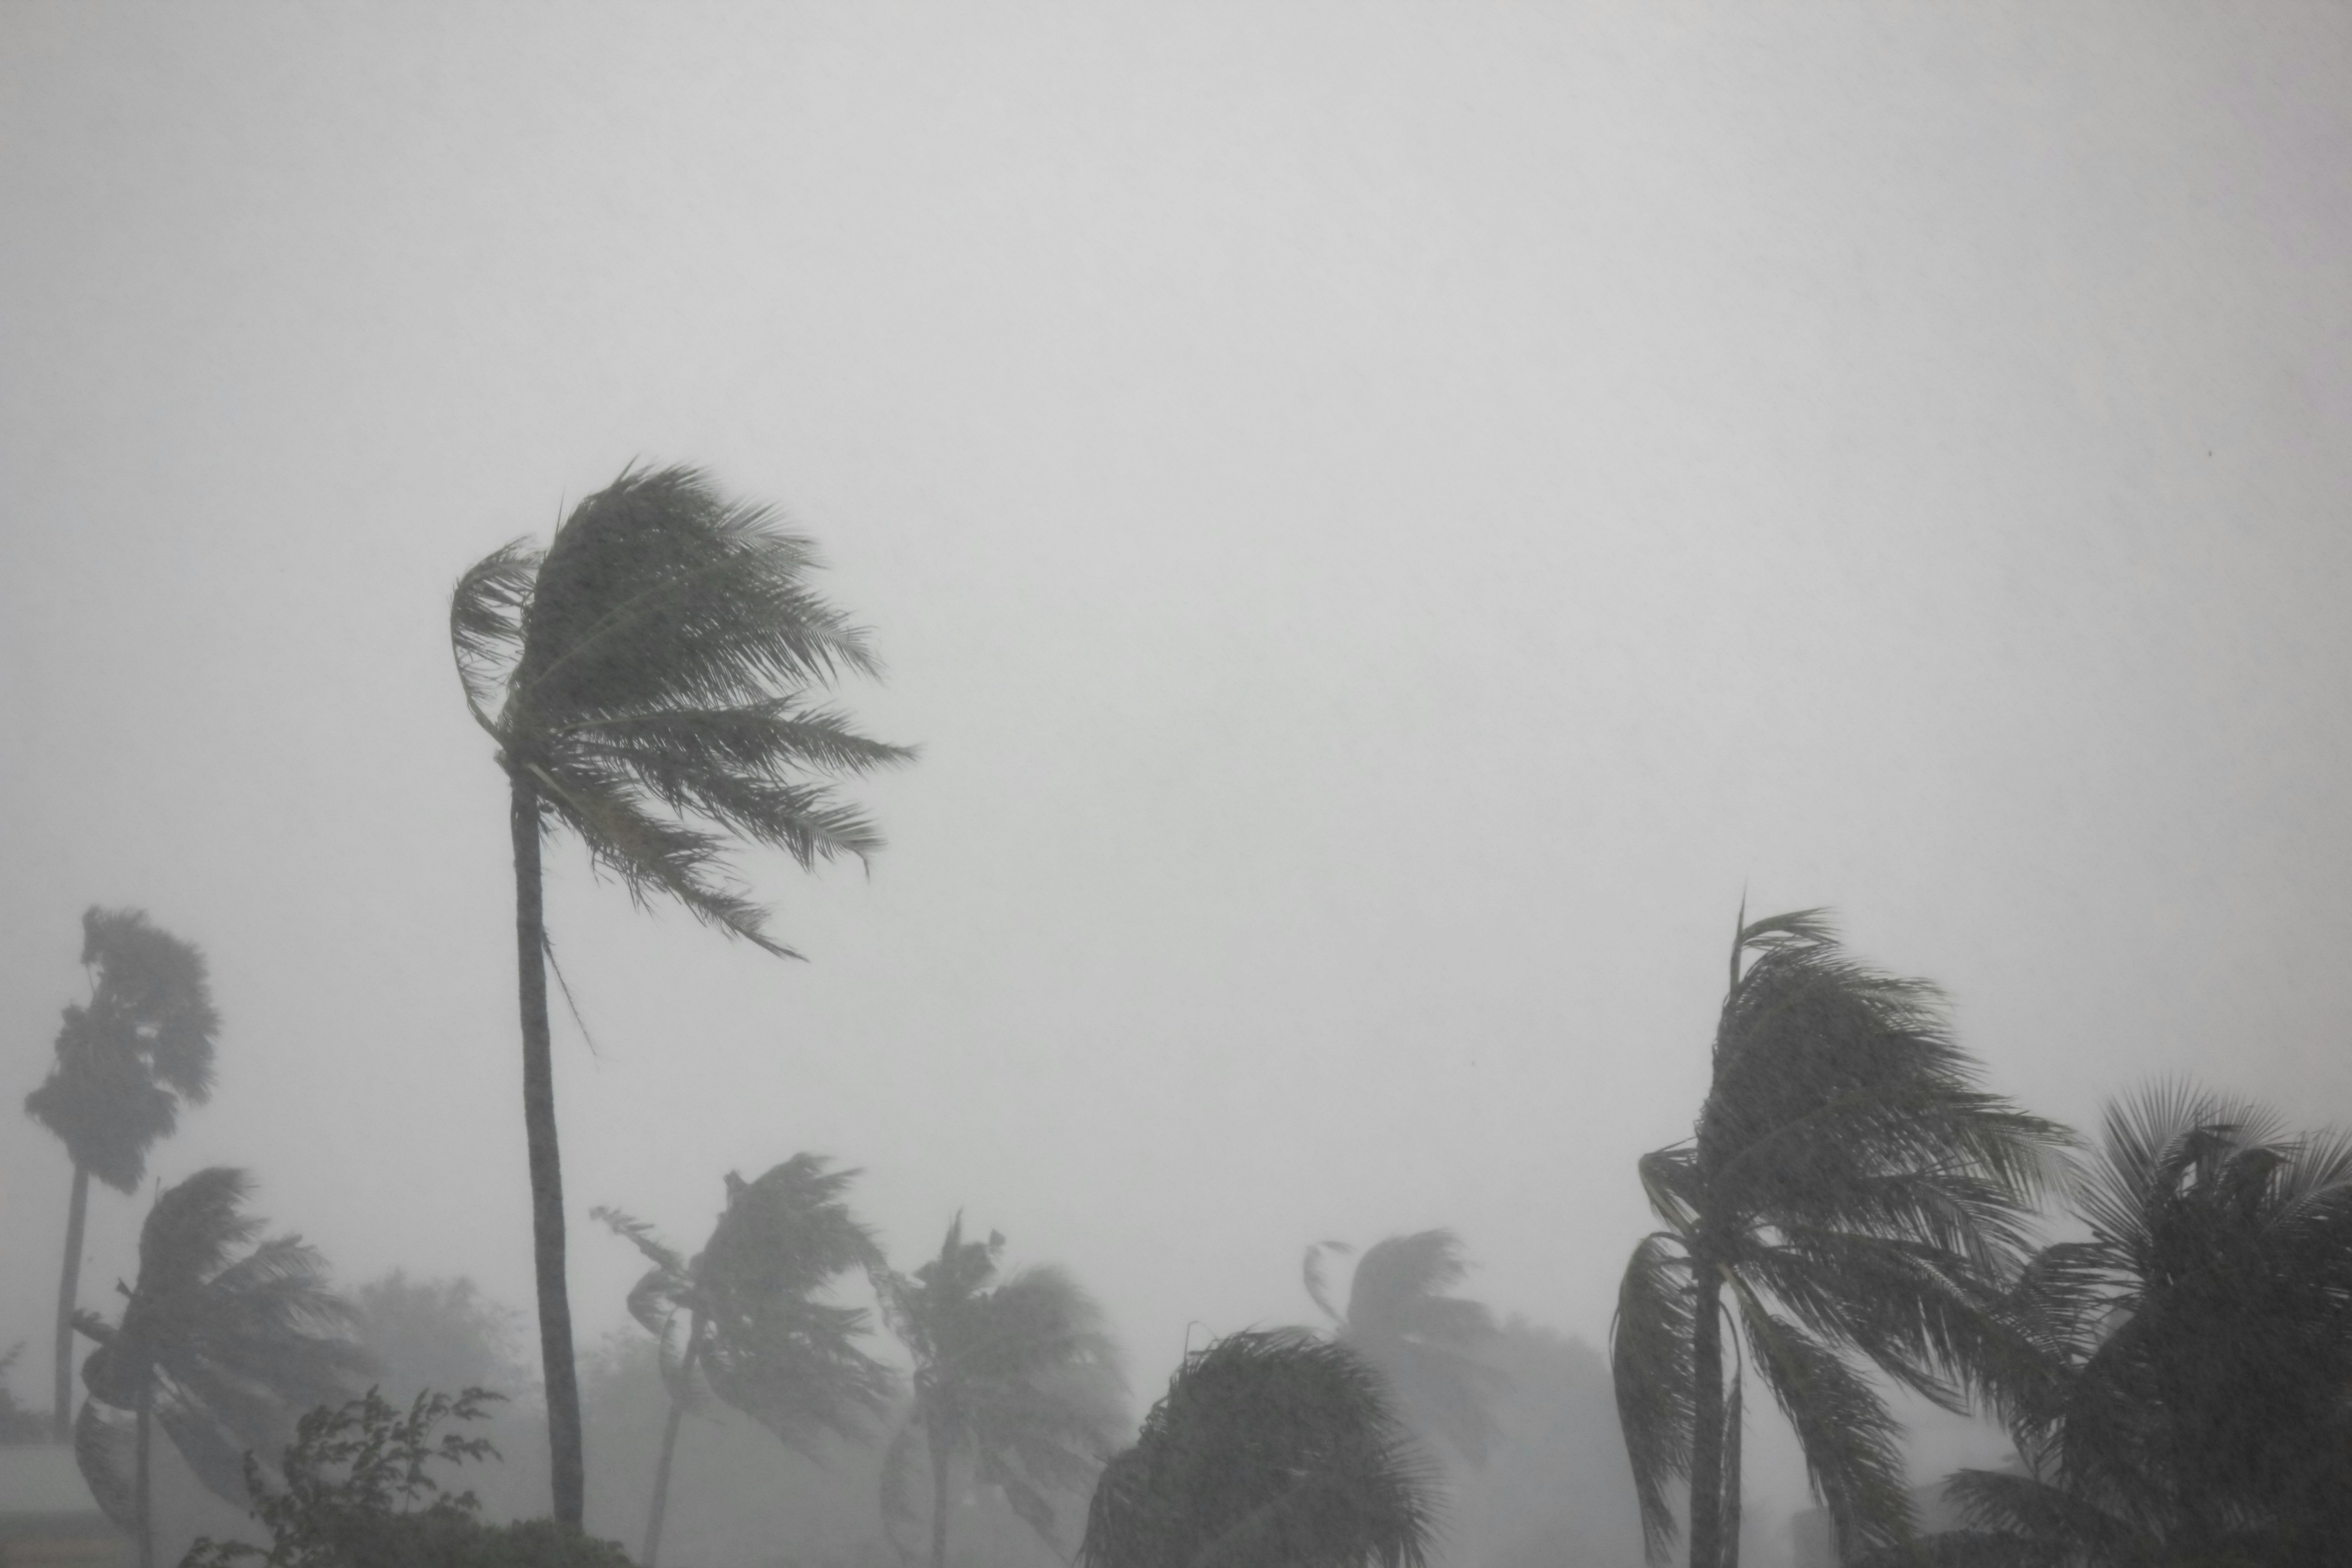 Palmės sulinko nuo stipraus vėjo ir artėjančio tornado audros